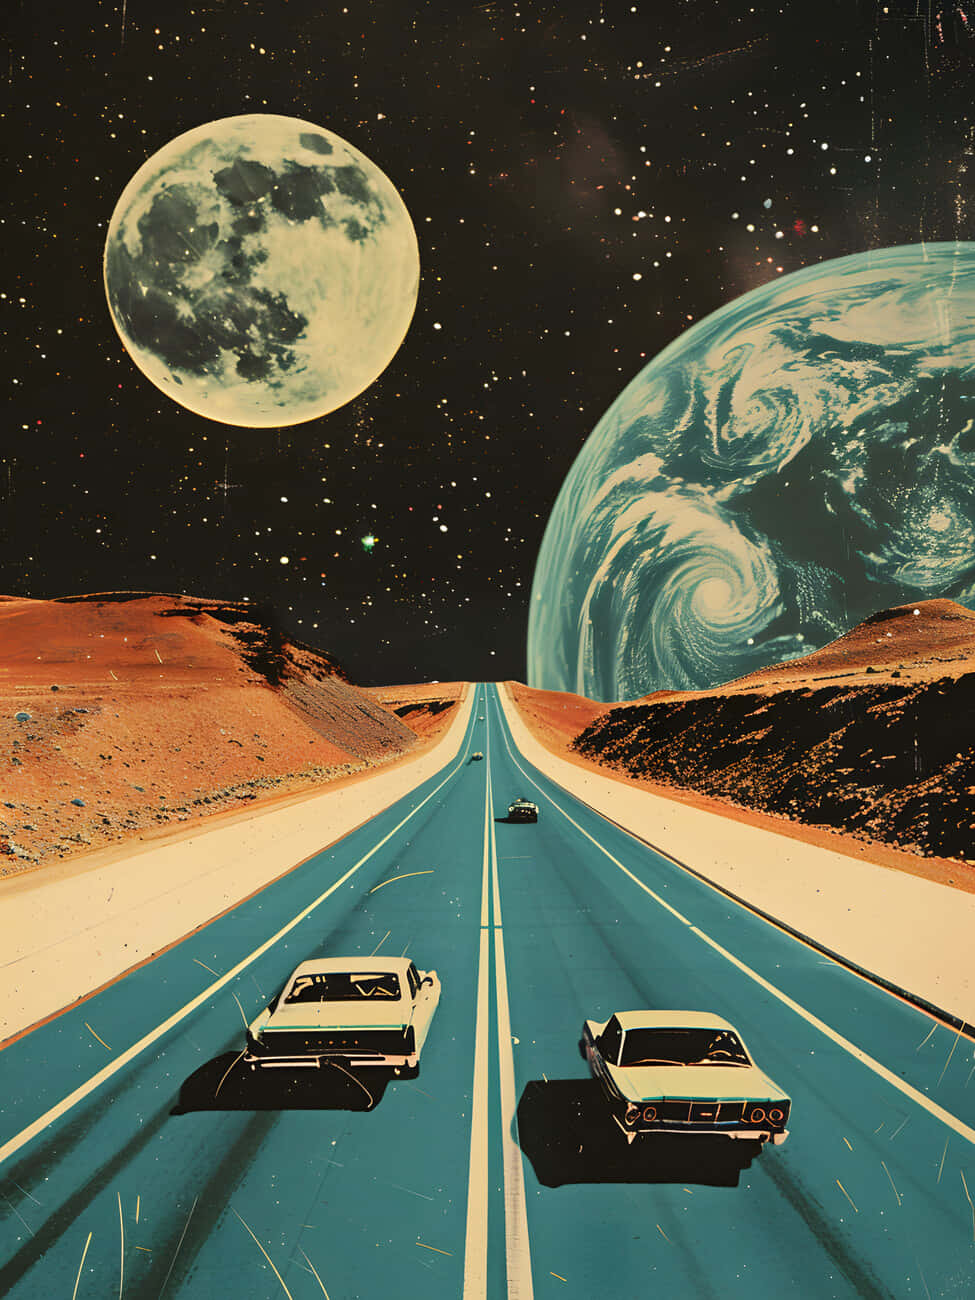 Retro Futuristic Space Road Trip Wallpaper